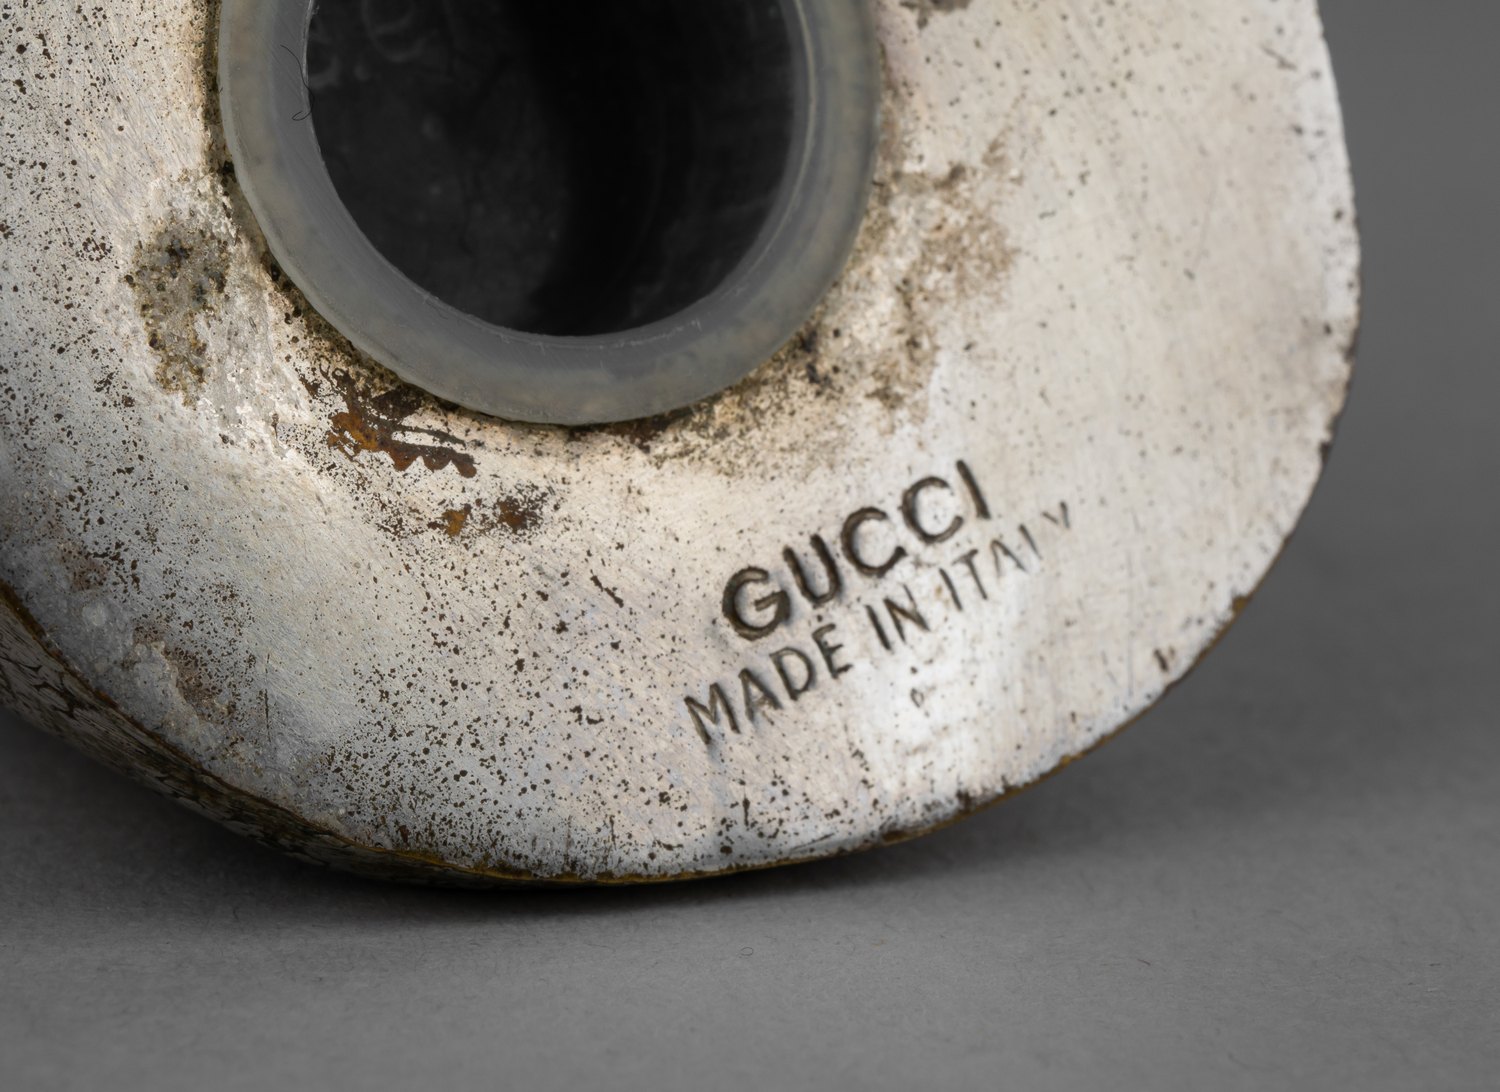 (Gucci) Брендовые солонка и перечница «Дельфины» в оригинальном футляре. Италия, фирма Gucci, вторая половина XX века.